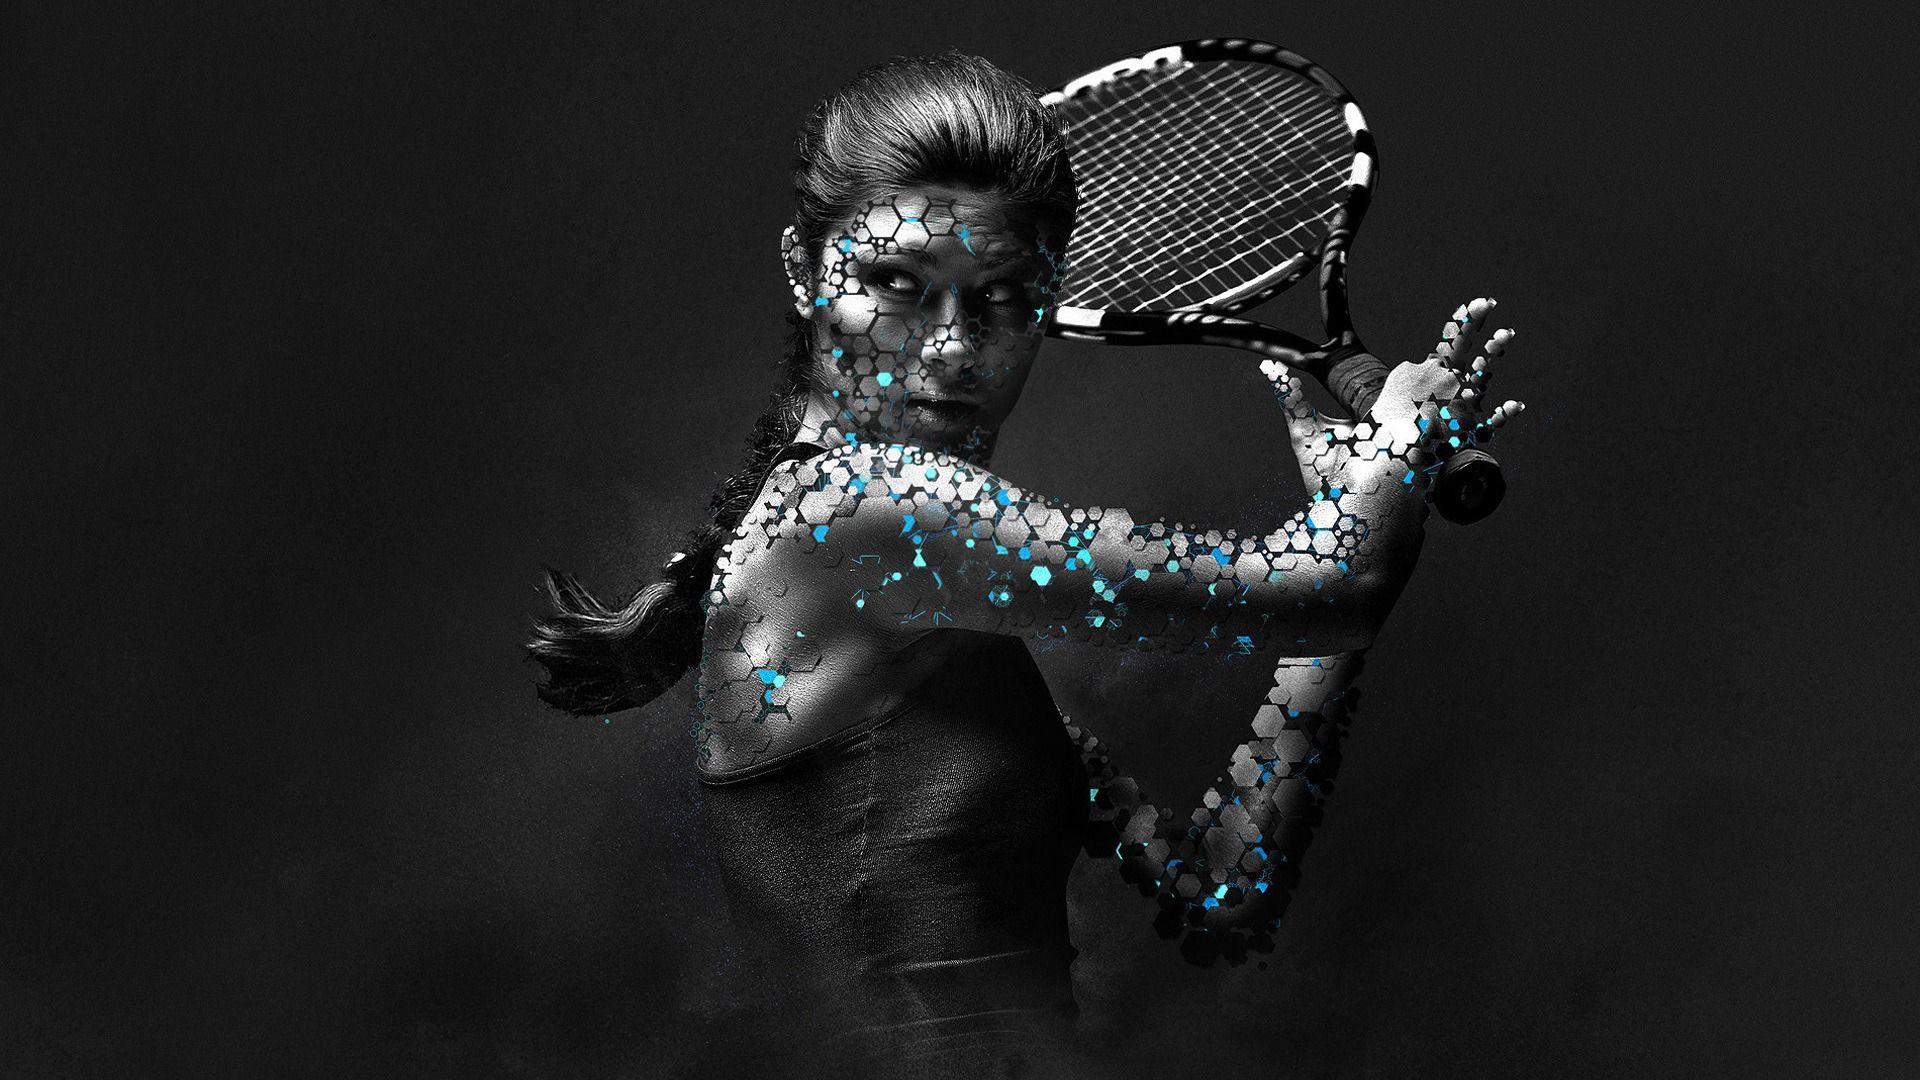 Woman Tennis Player 1080p HD Wallpaper Sports. Photohop wallpaper, Sports advertising, Photohop design